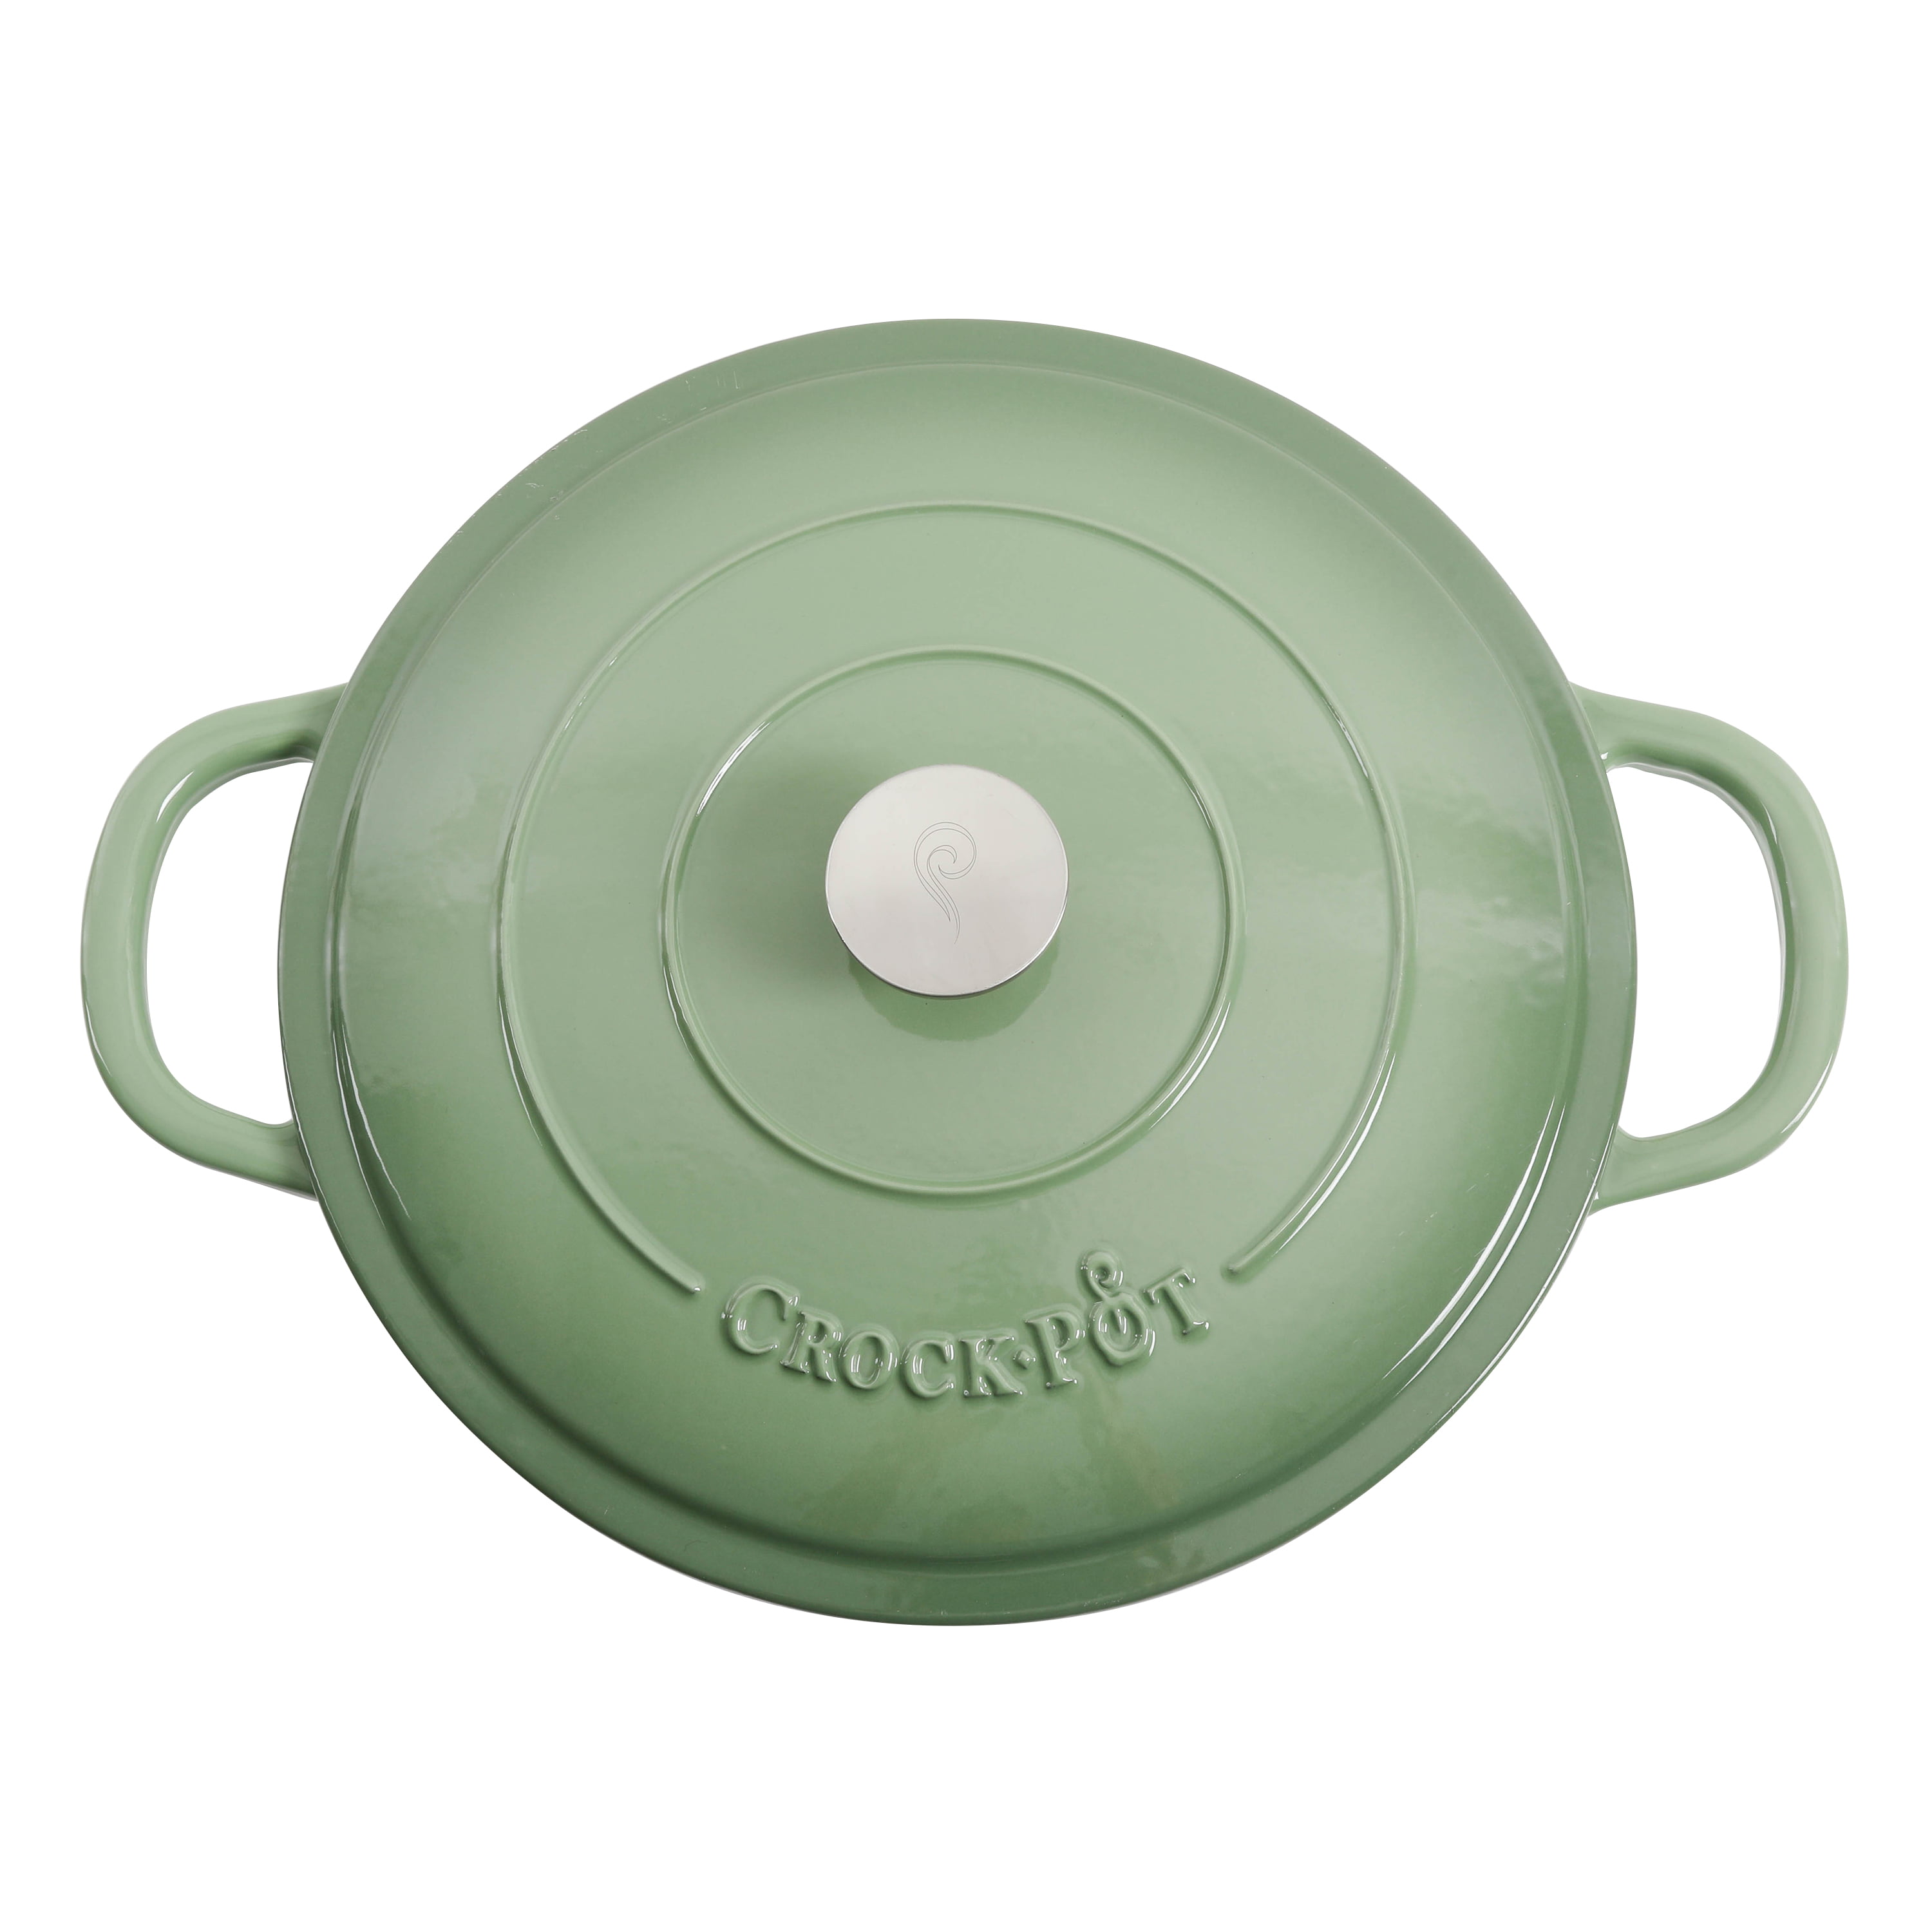 Crock Pot Artisan 7-Quart Oval Dutch Oven - Gray, 7 qt - Harris Teeter